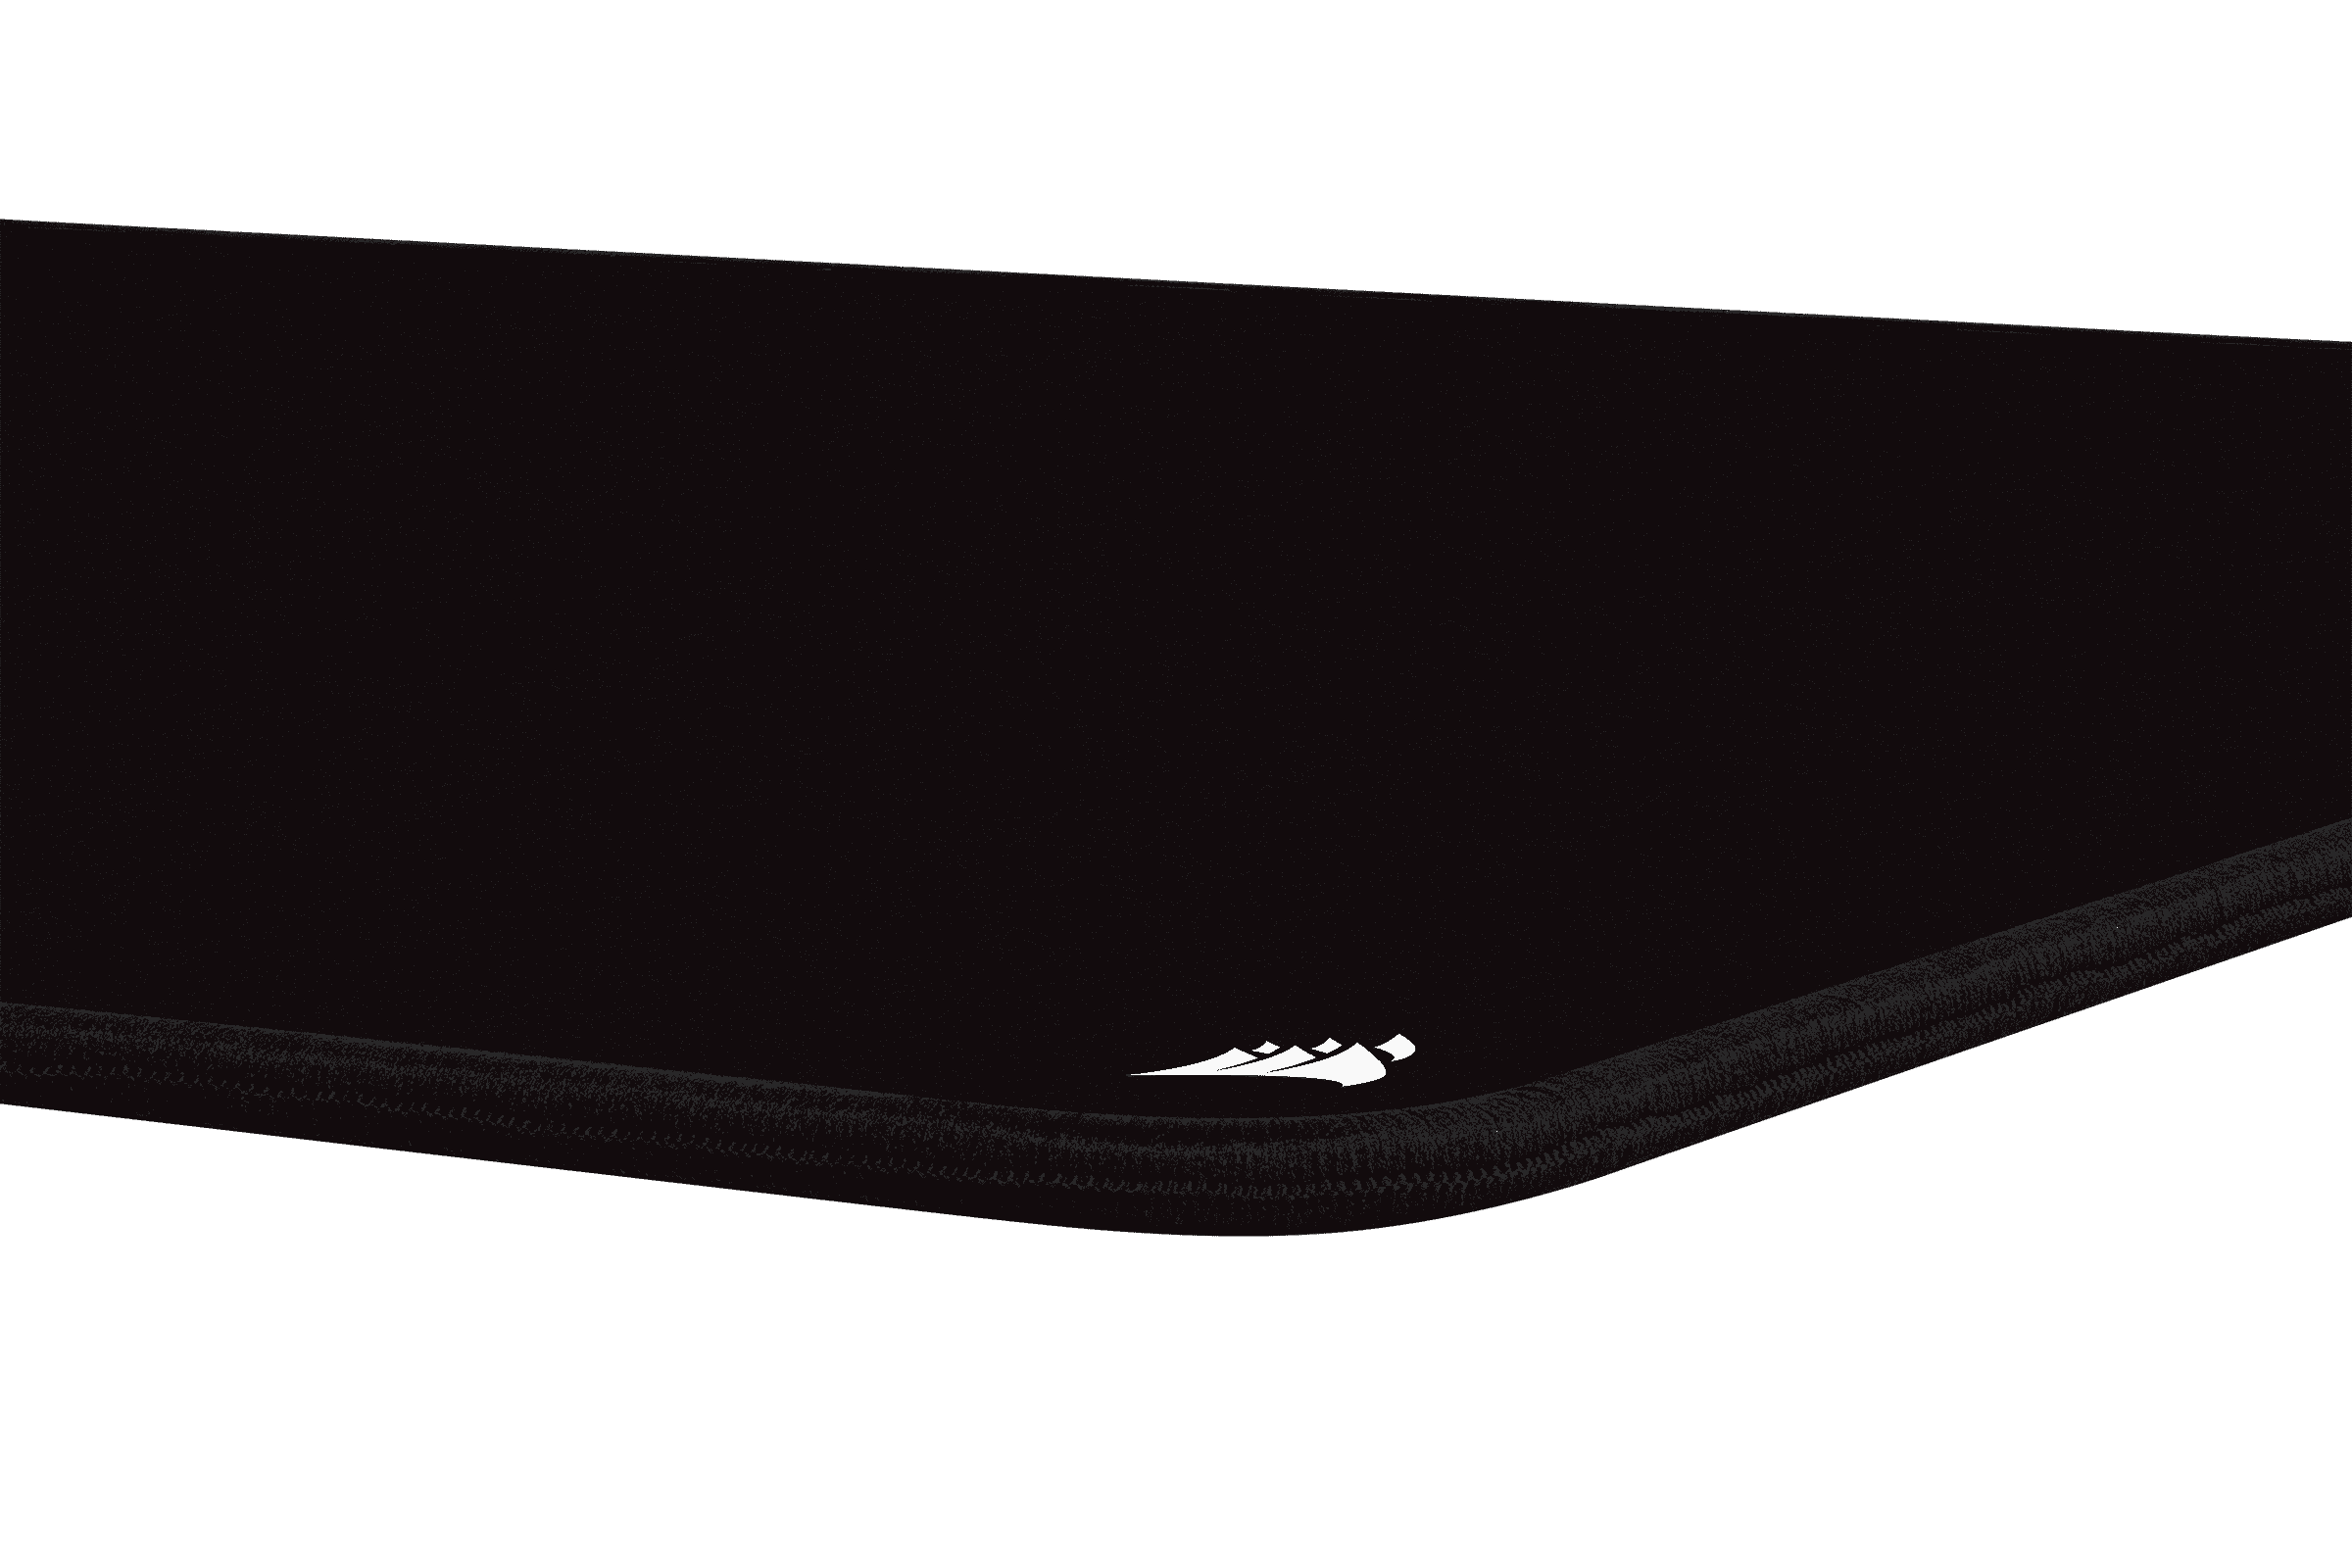 Corsair MM350 PRO Tapis de Souris Gaming, Tissu Résistant aux Éclaboussures  Premium (Surface de 93 cm sur 40 cm, Textile Micro-Maille, Caoutchouc